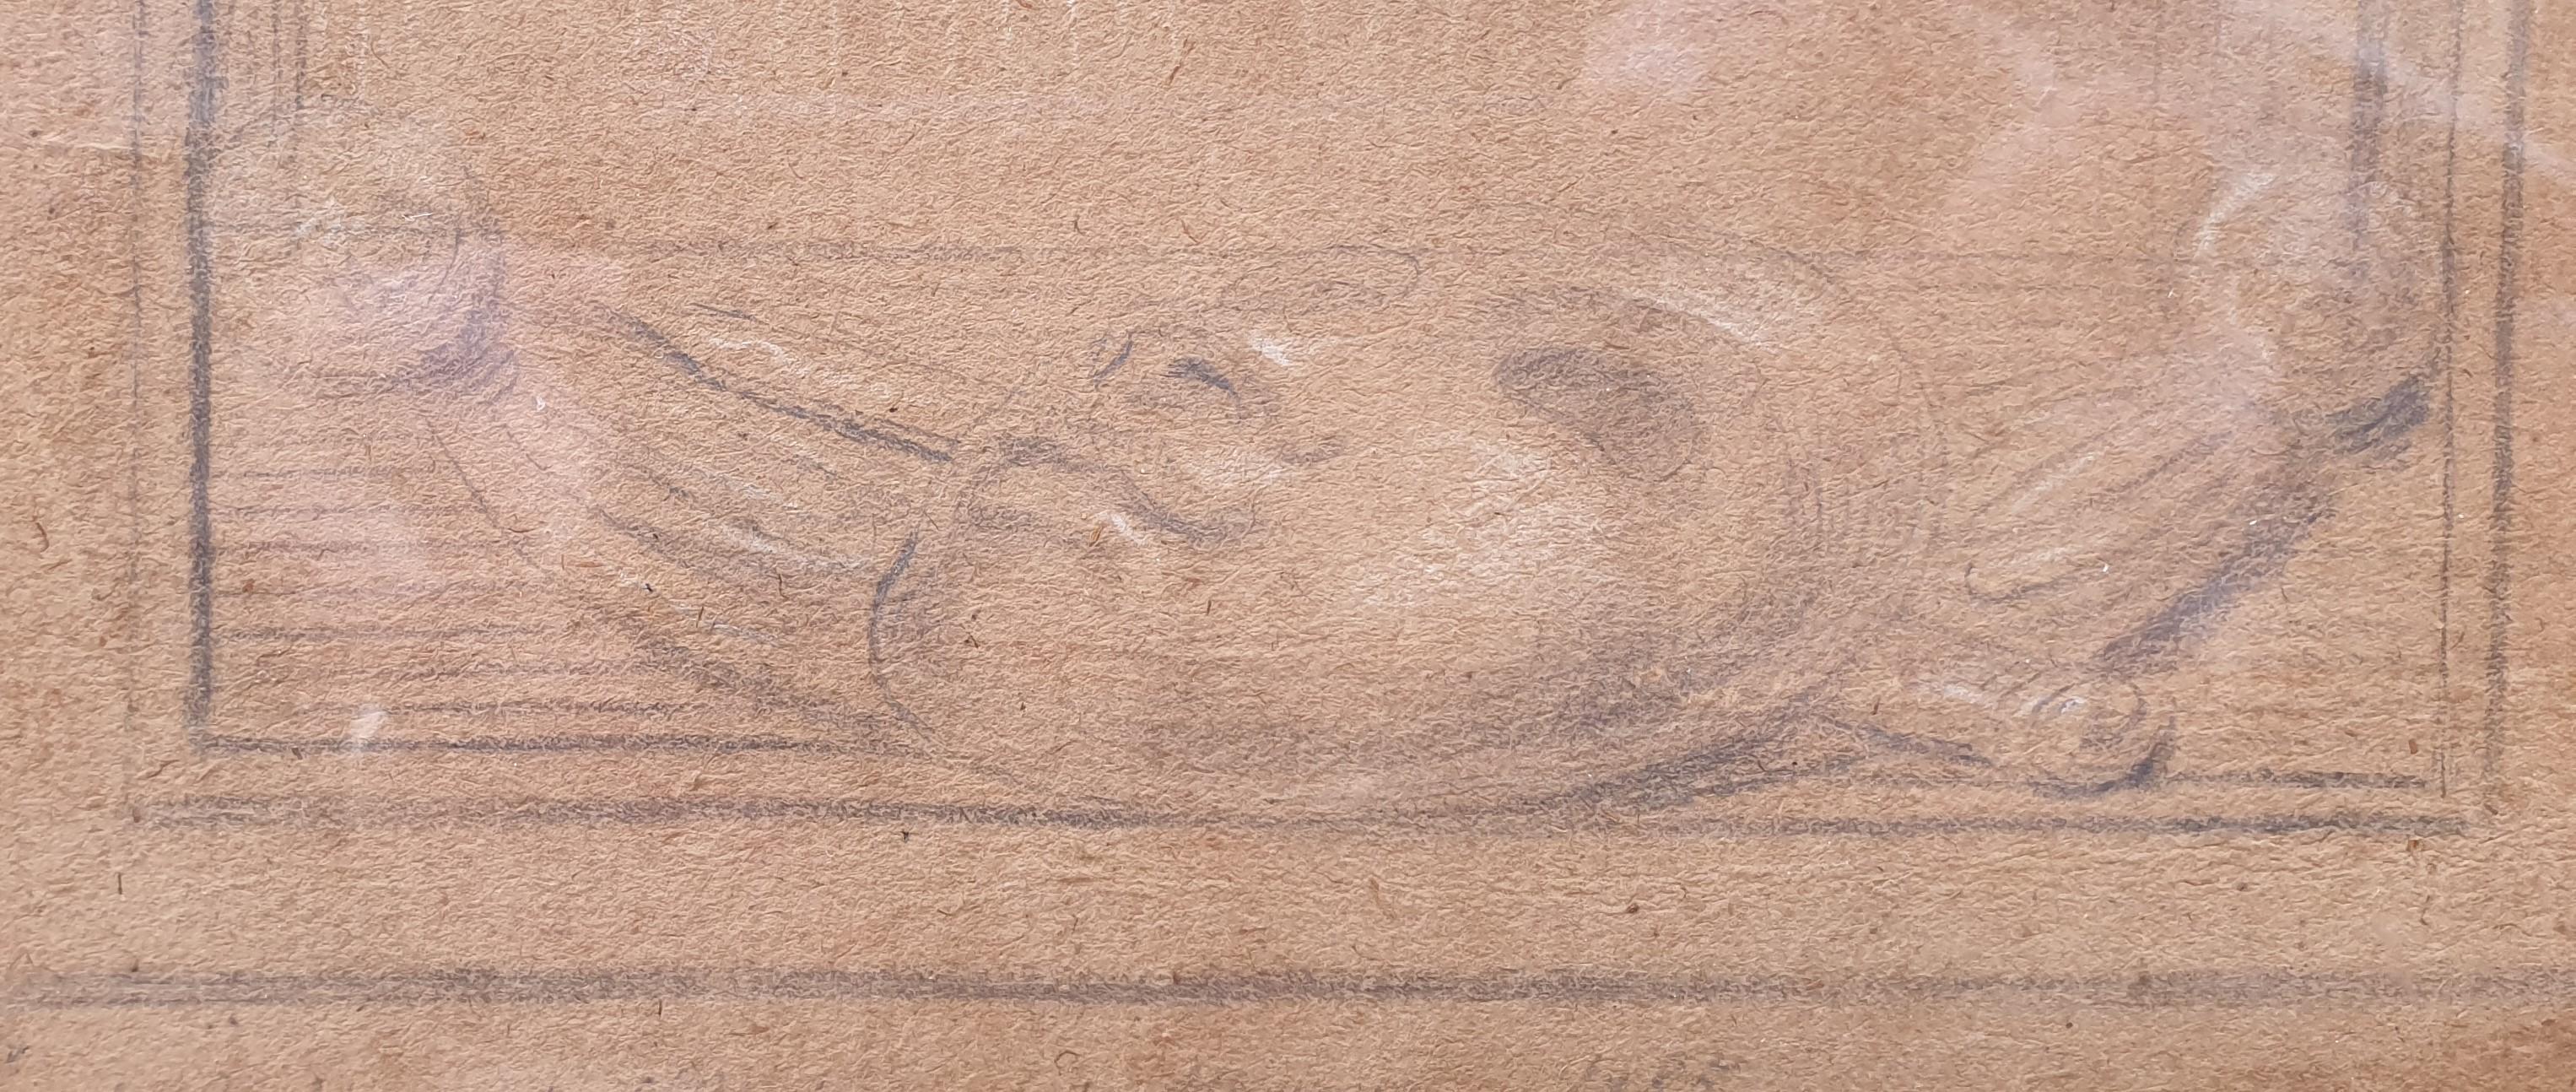 Französisch Schule Zeichnung 18. Porträt Ténor SAINT AUBIN drei Kreiden Paris Opéra  (Akademisch), Art, von Unknown